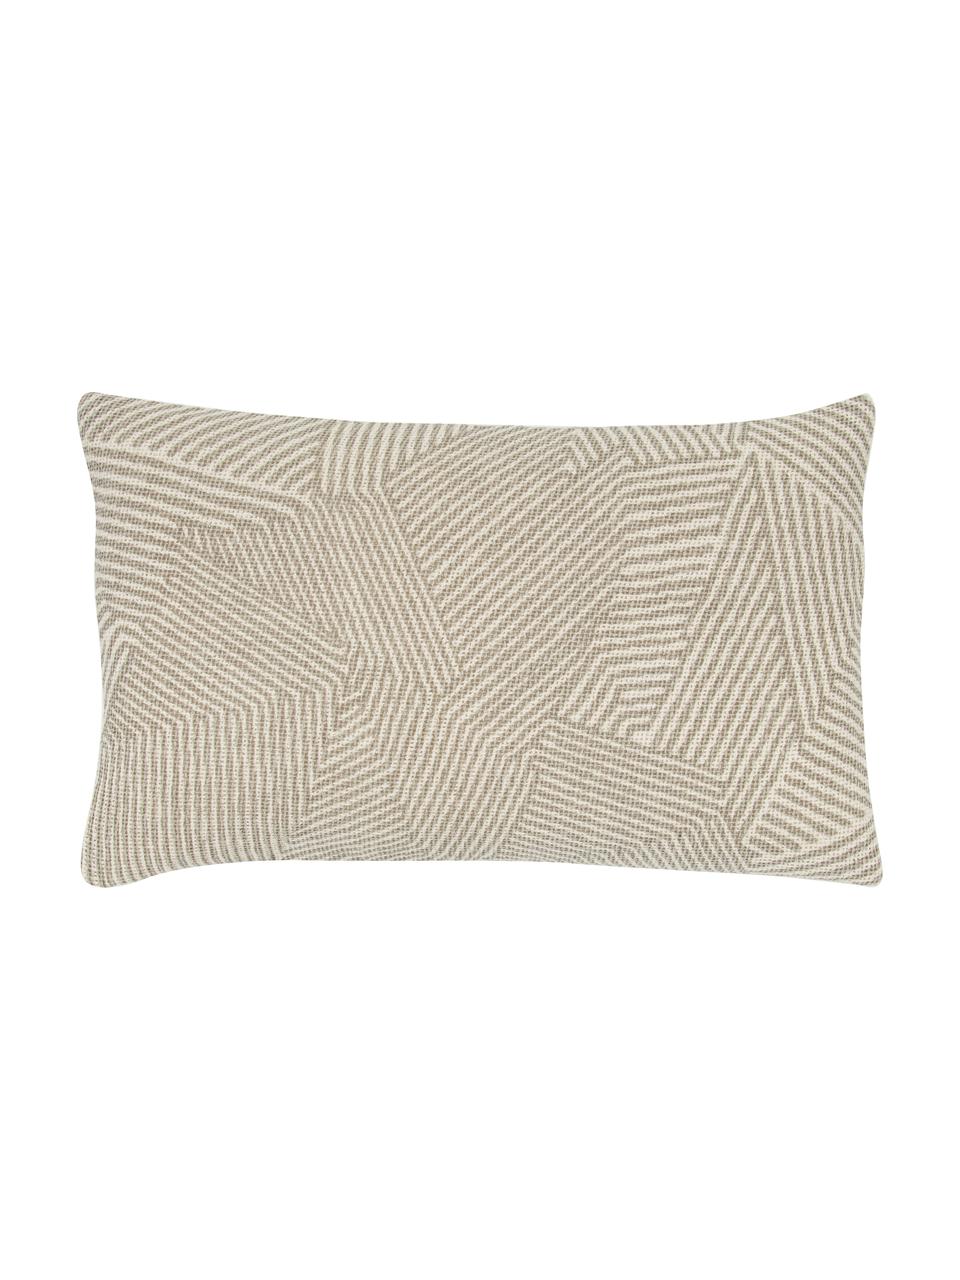 Poszewka na poduszkę Nadia, 100% bawełna, Kremowobiały, beżowy, S 30 x D 50 cm